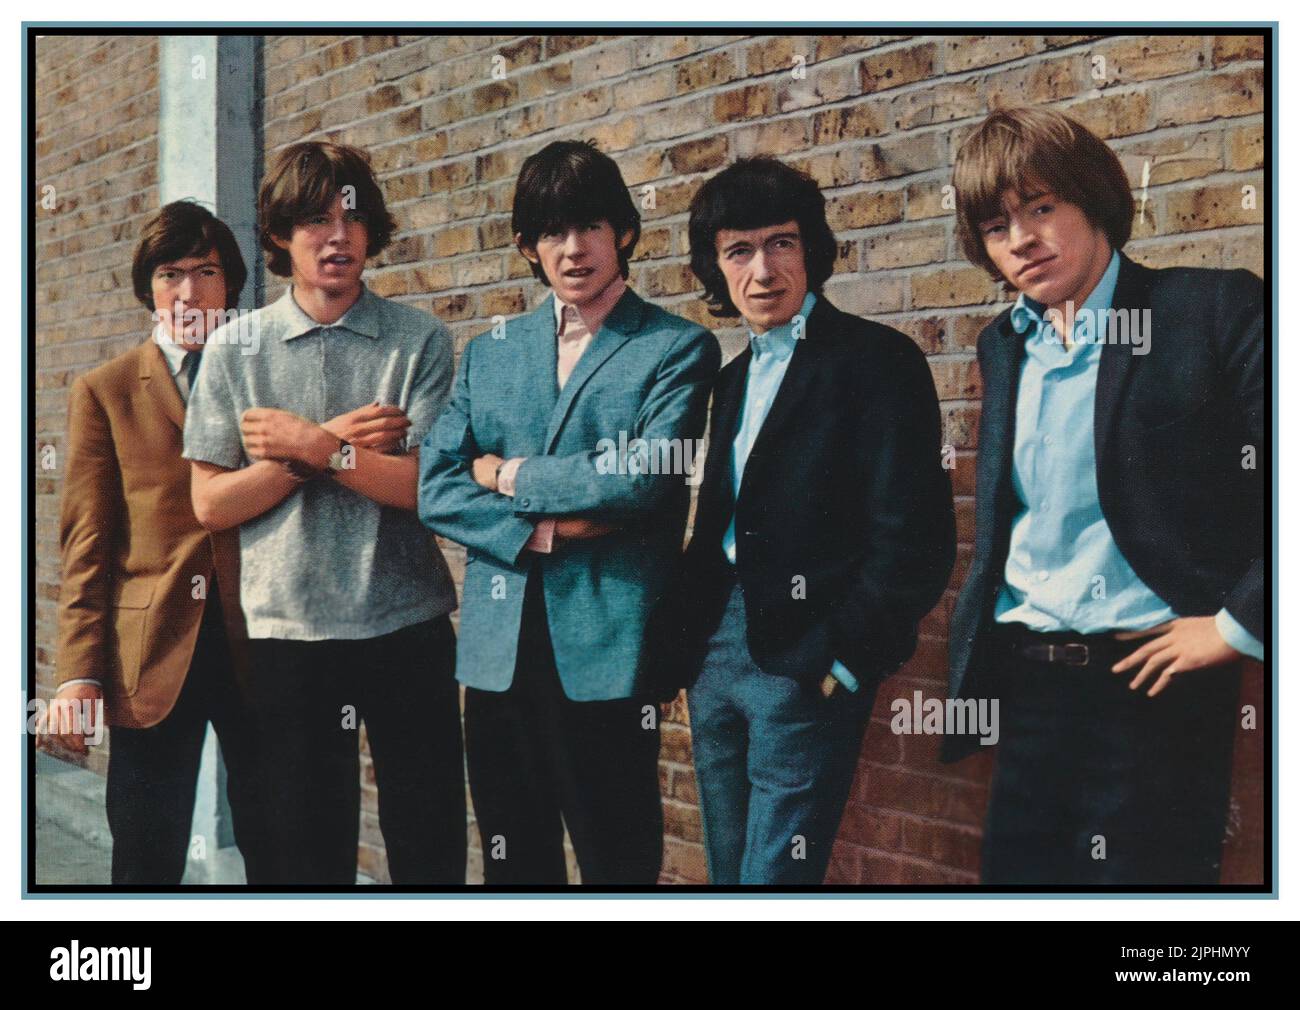 Poster promozionale sulle pietre rolling vintage dei primi anni 1958 con L-R Charlie Watts, Mick Jagger, Keith Richards, Bill Wyman e Brian Jones. Gruppo di musica pop nel Regno Unito che divenne uno dei più grandi gruppi pop britannici di tutti i tempi. Foto Stock